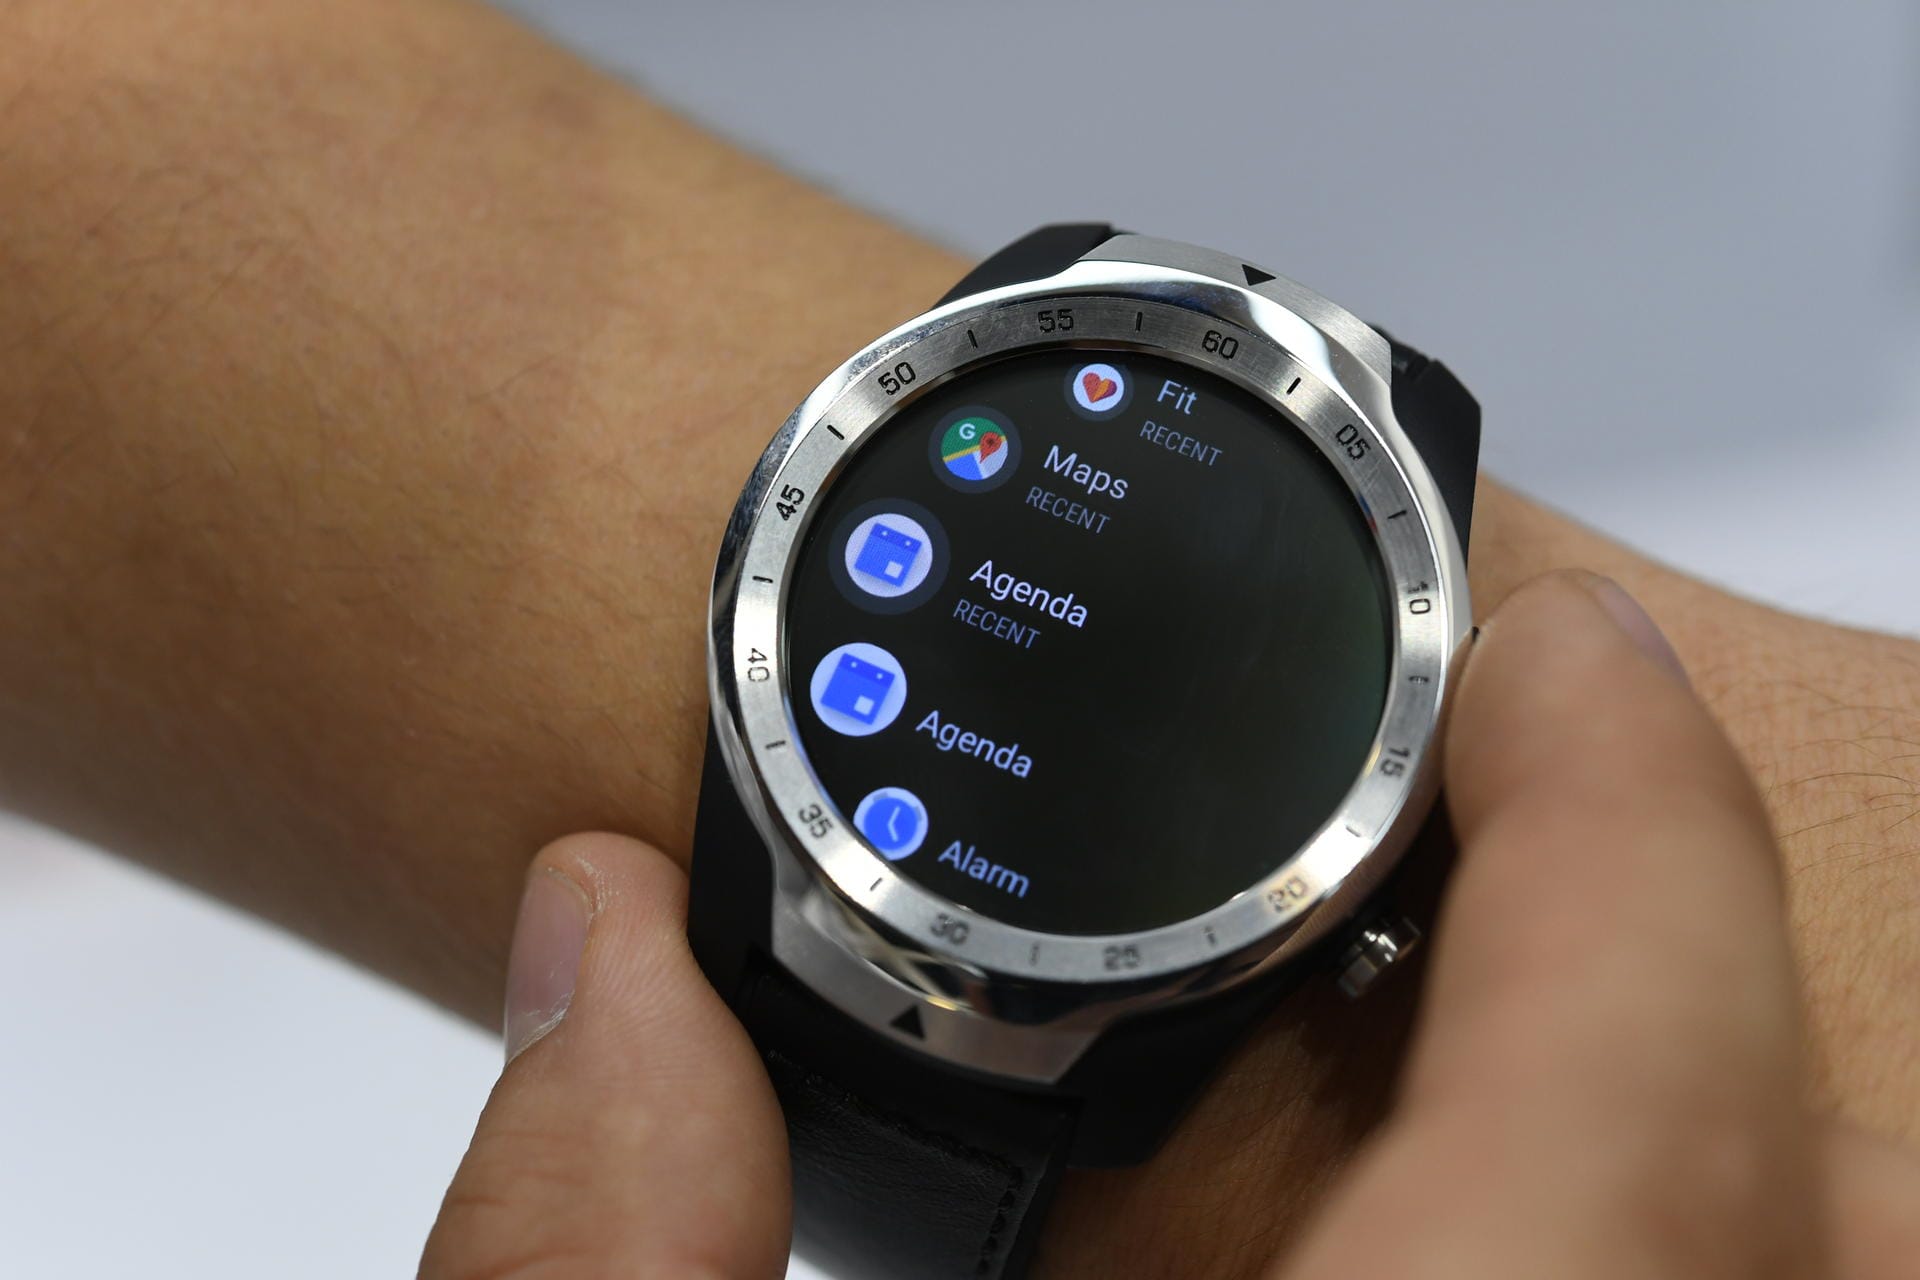 Die Smartwatch TicWatch Pro von Mobvoi läuft mit Googles Wear OS: Apps aus dem Google Play Store lassen sich direkt auf der Uhr auswählen und installieren.